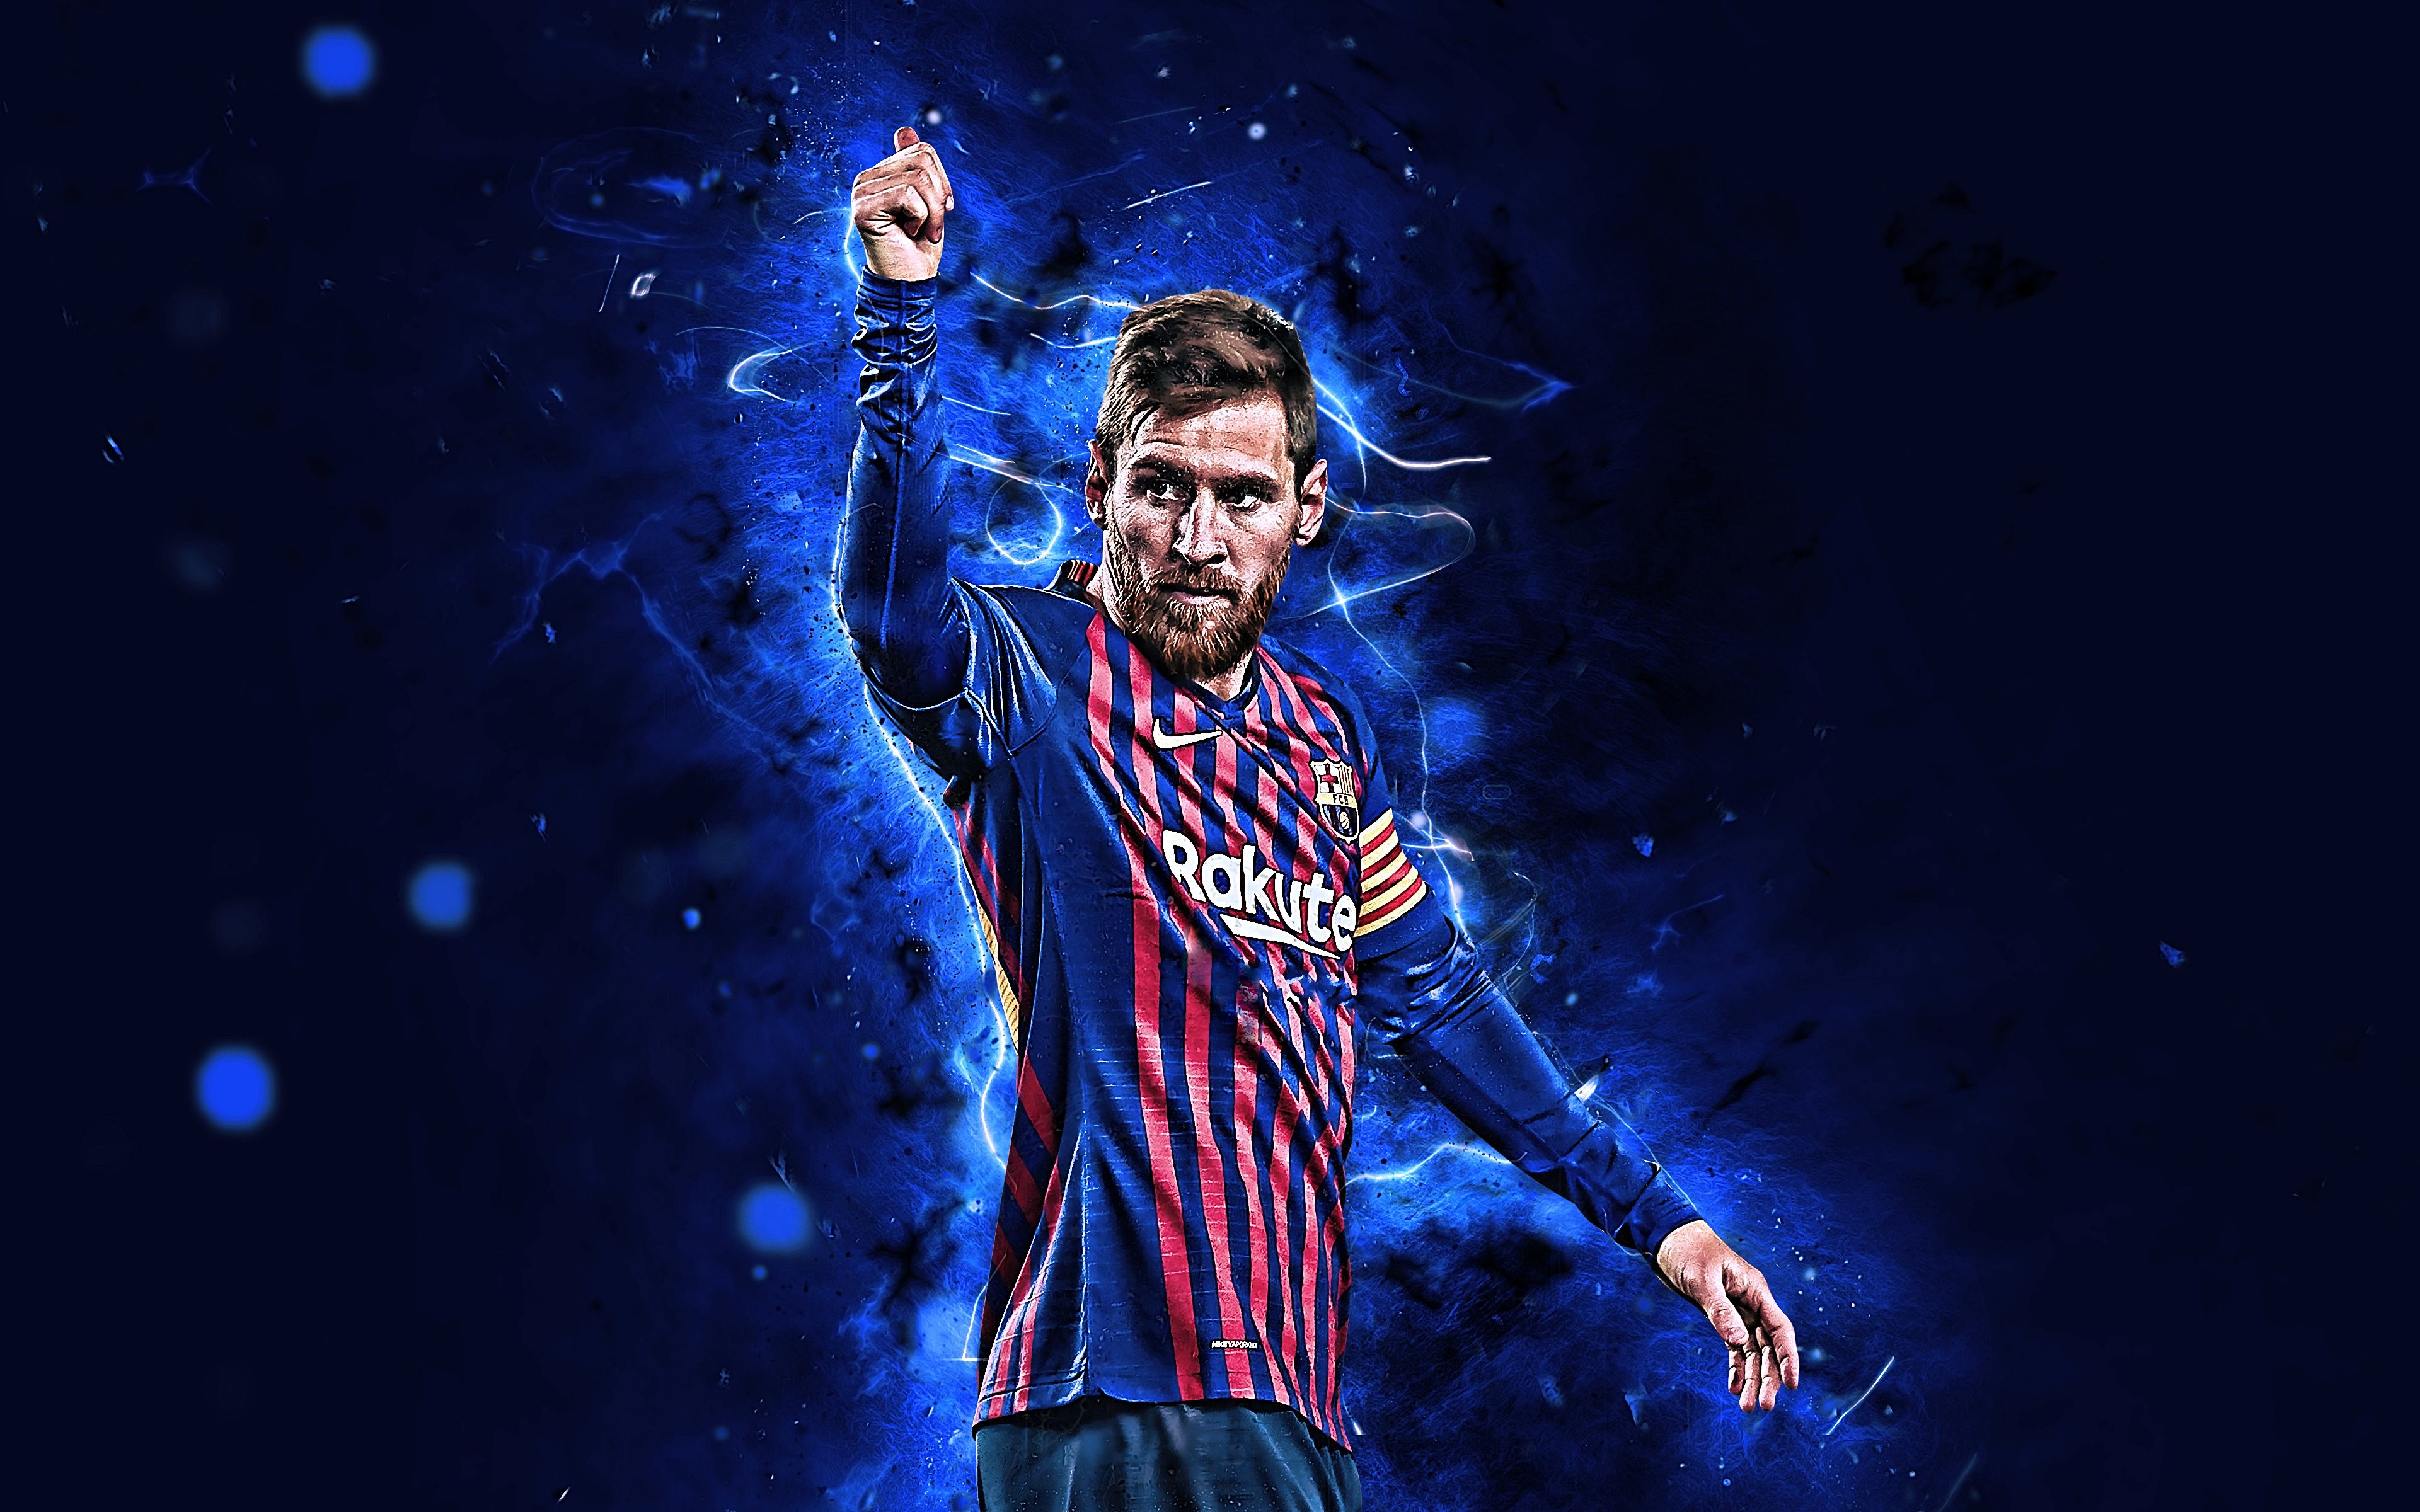 Bộ sưu tập ảnh Messi 4K: Cùng chiêm ngưỡng những bức ảnh chất lượng cao nhất của Messi với bộ sưu tập hình nền 4K. Từ những pha xử lý nhanh nhạy, tới những bàn thắng đẹp mắt, tất cả đều được chụp lại một cách chuyên nghiệp và tinh tế để tạo ra những bức ảnh ấn tượng nhất.